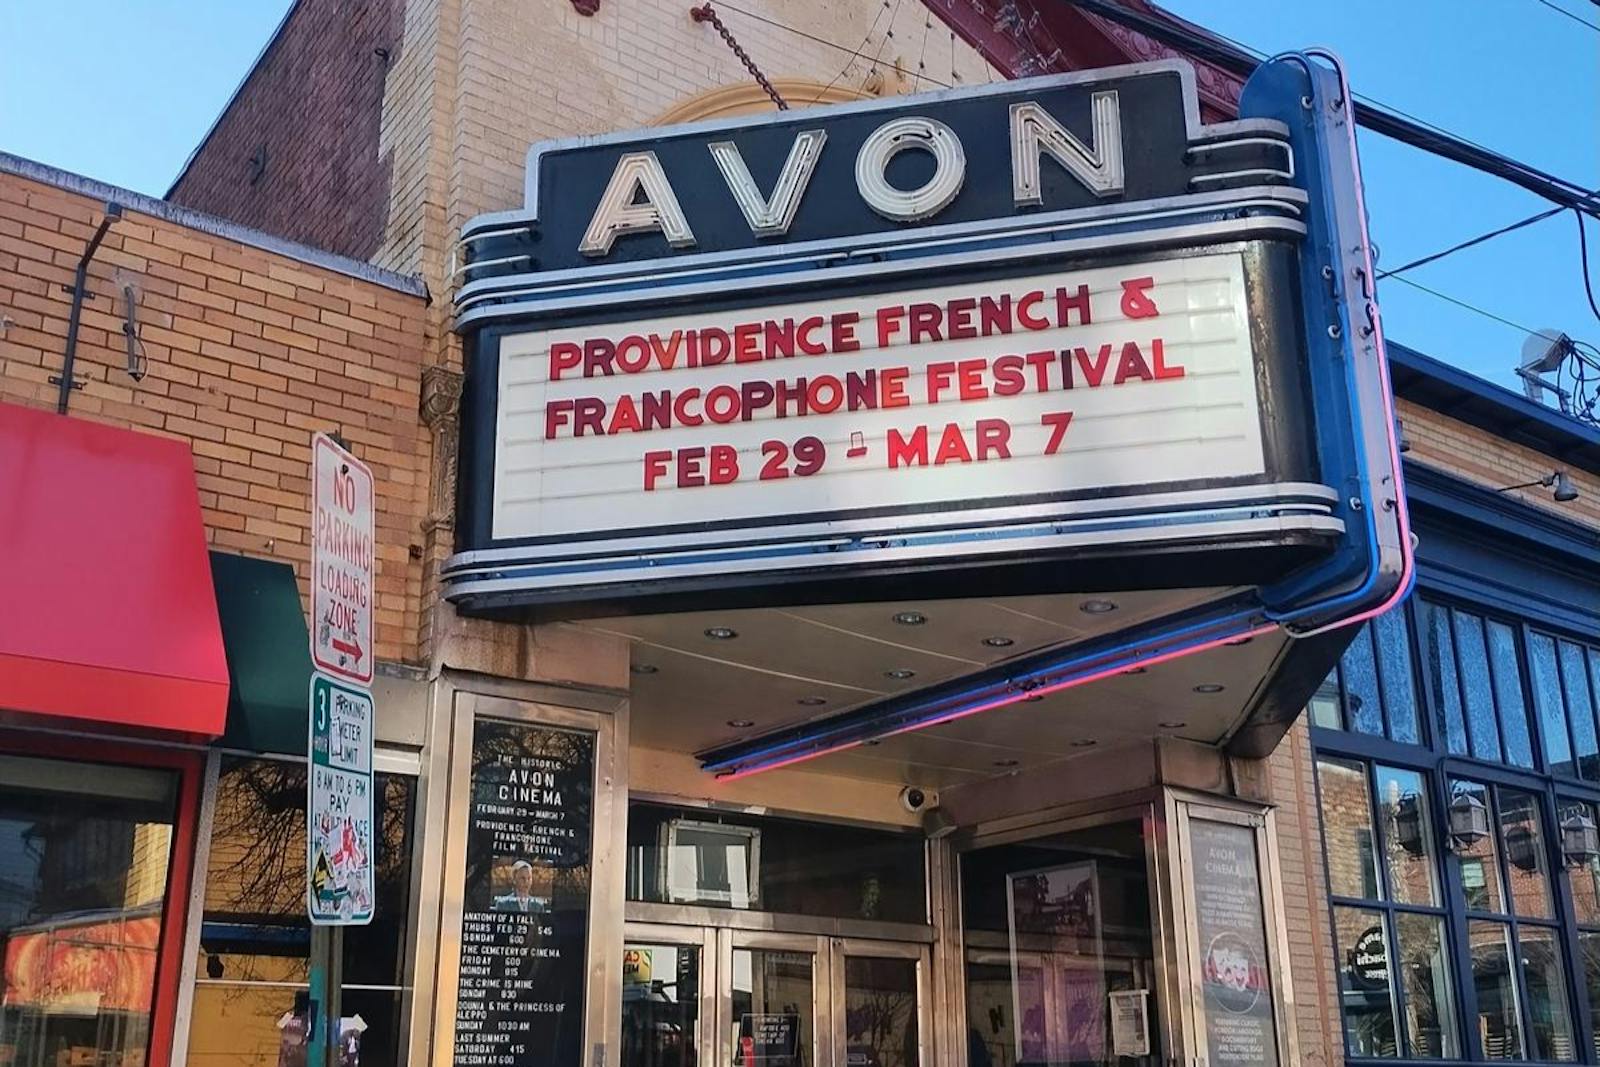 Le Festival du film français et francophone Providence amène une variété de cinéma français à Avon